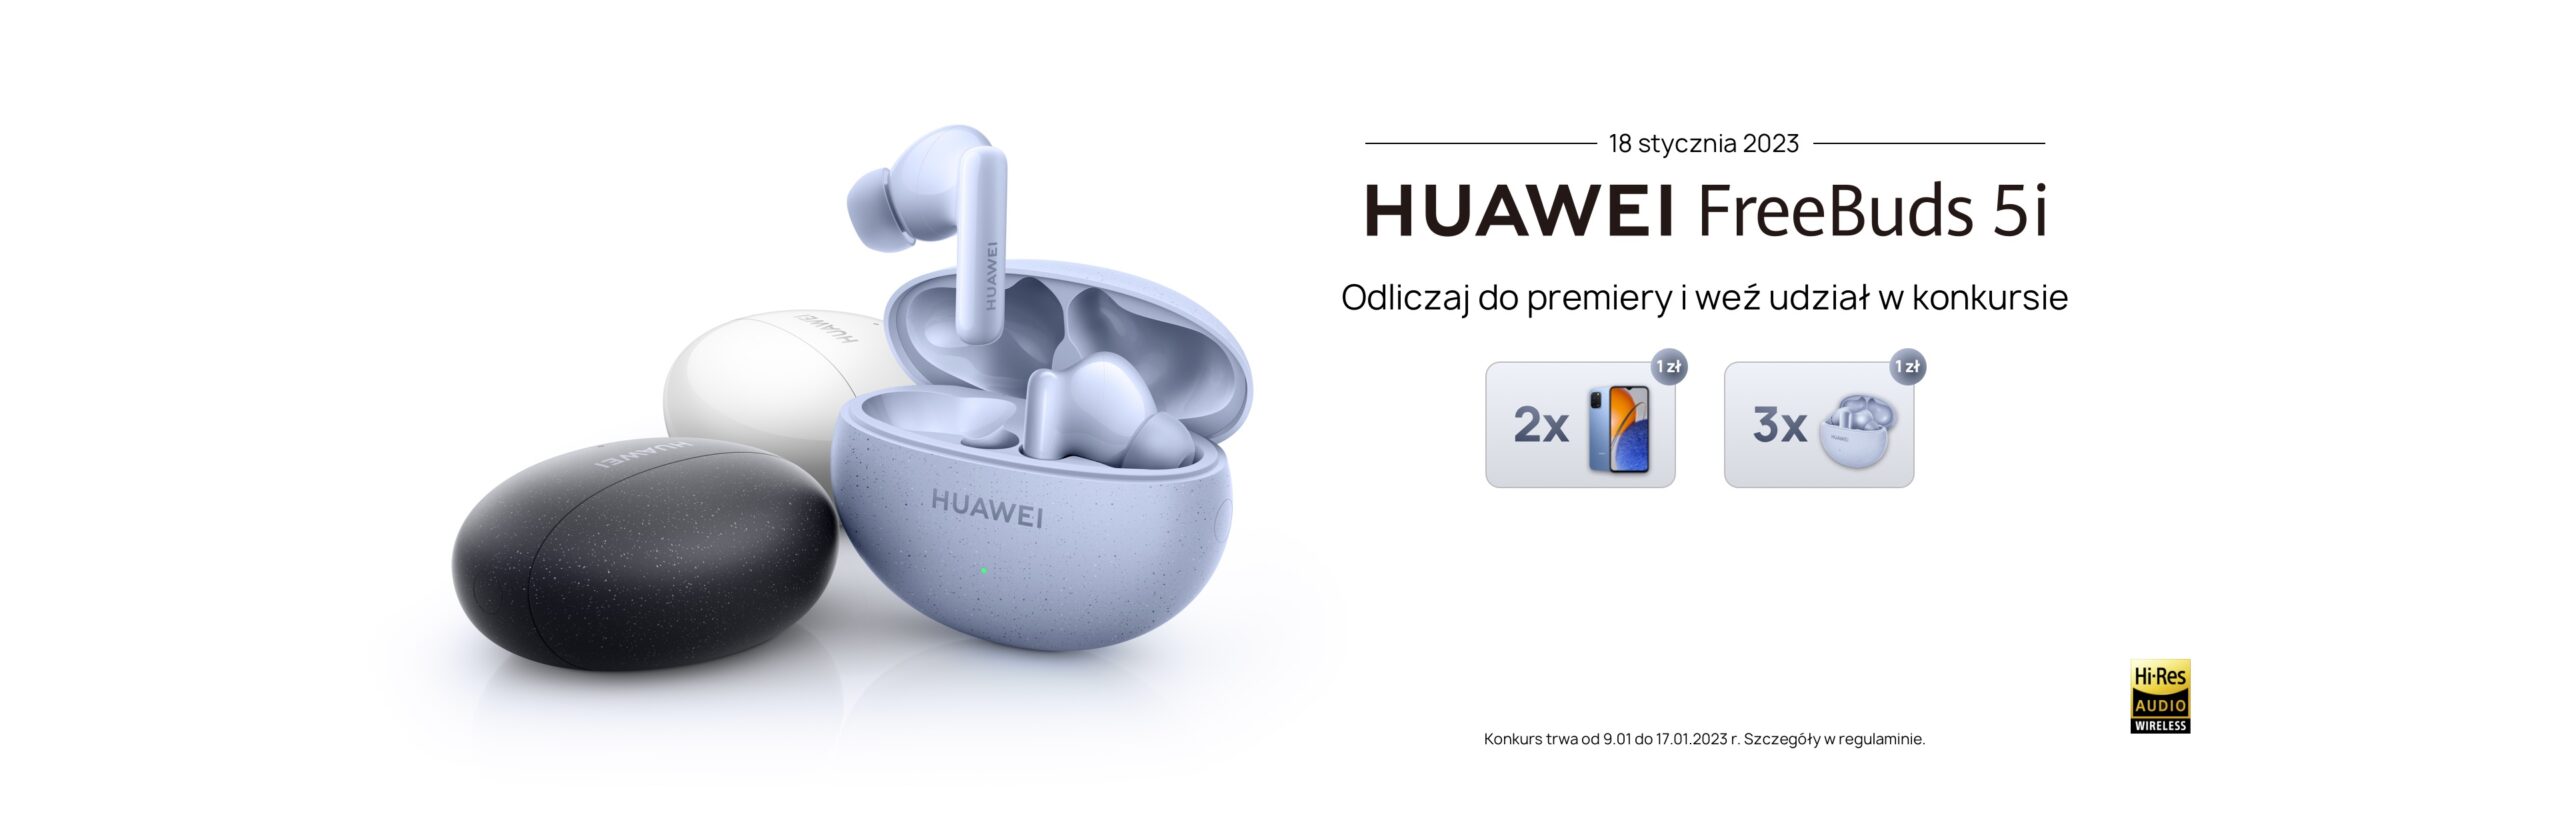 Huawei zaczyna odliczanie do premiery słuchawek FreeBuds 5i i zaprasza do udziału w konkursie z ponad 200 nagrodami